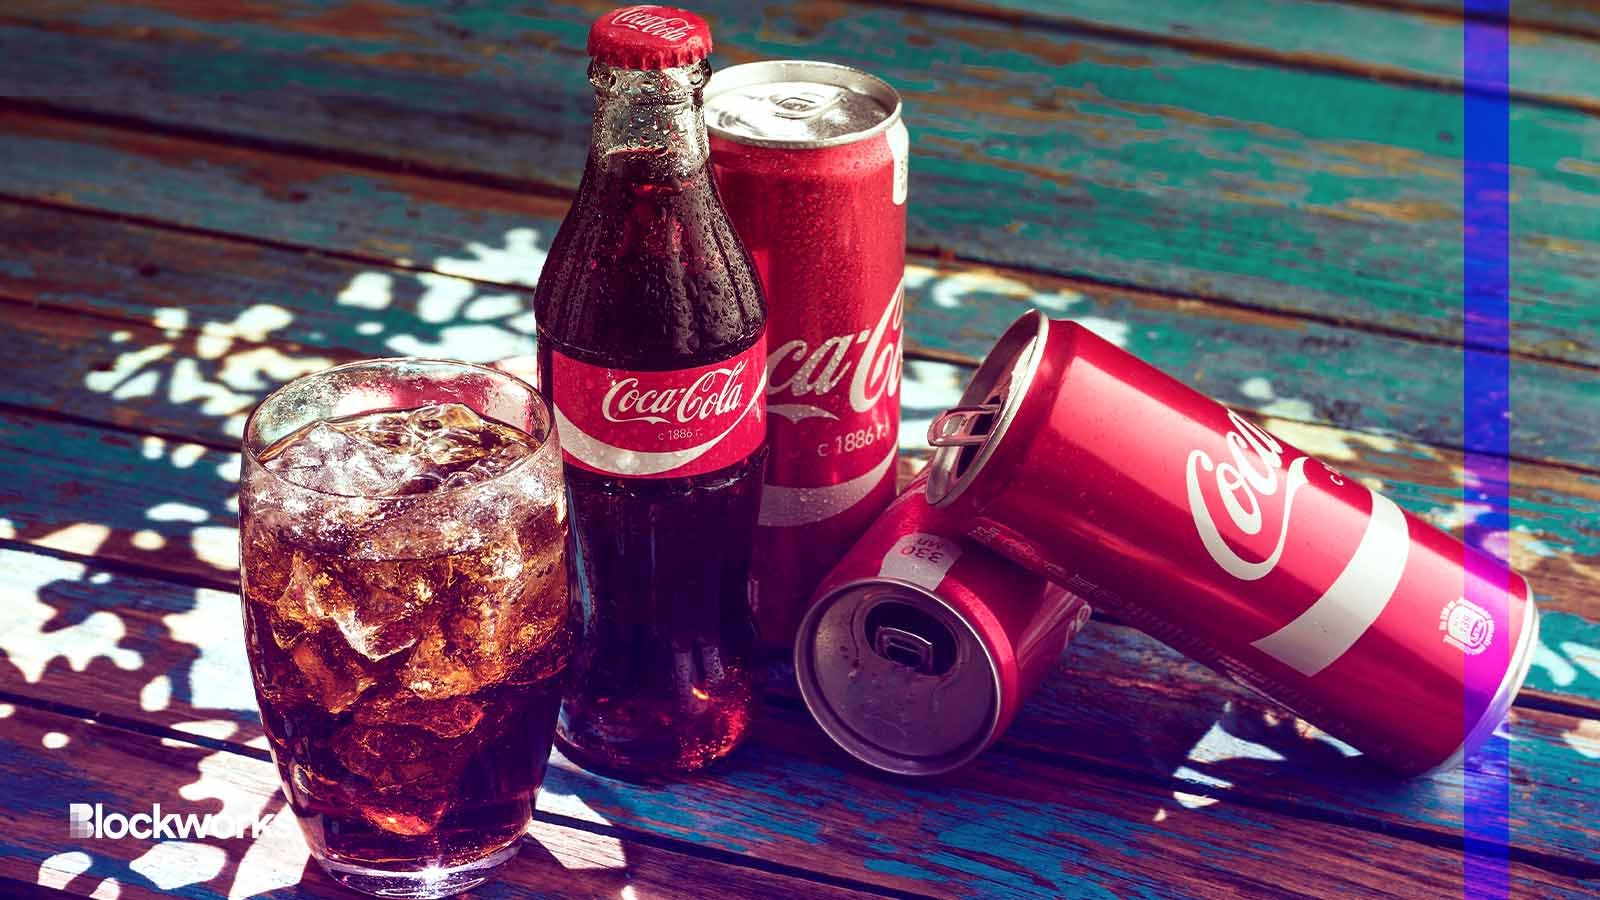 The Coca-Cola Company unveils fresh brand platform for Coca-Cola